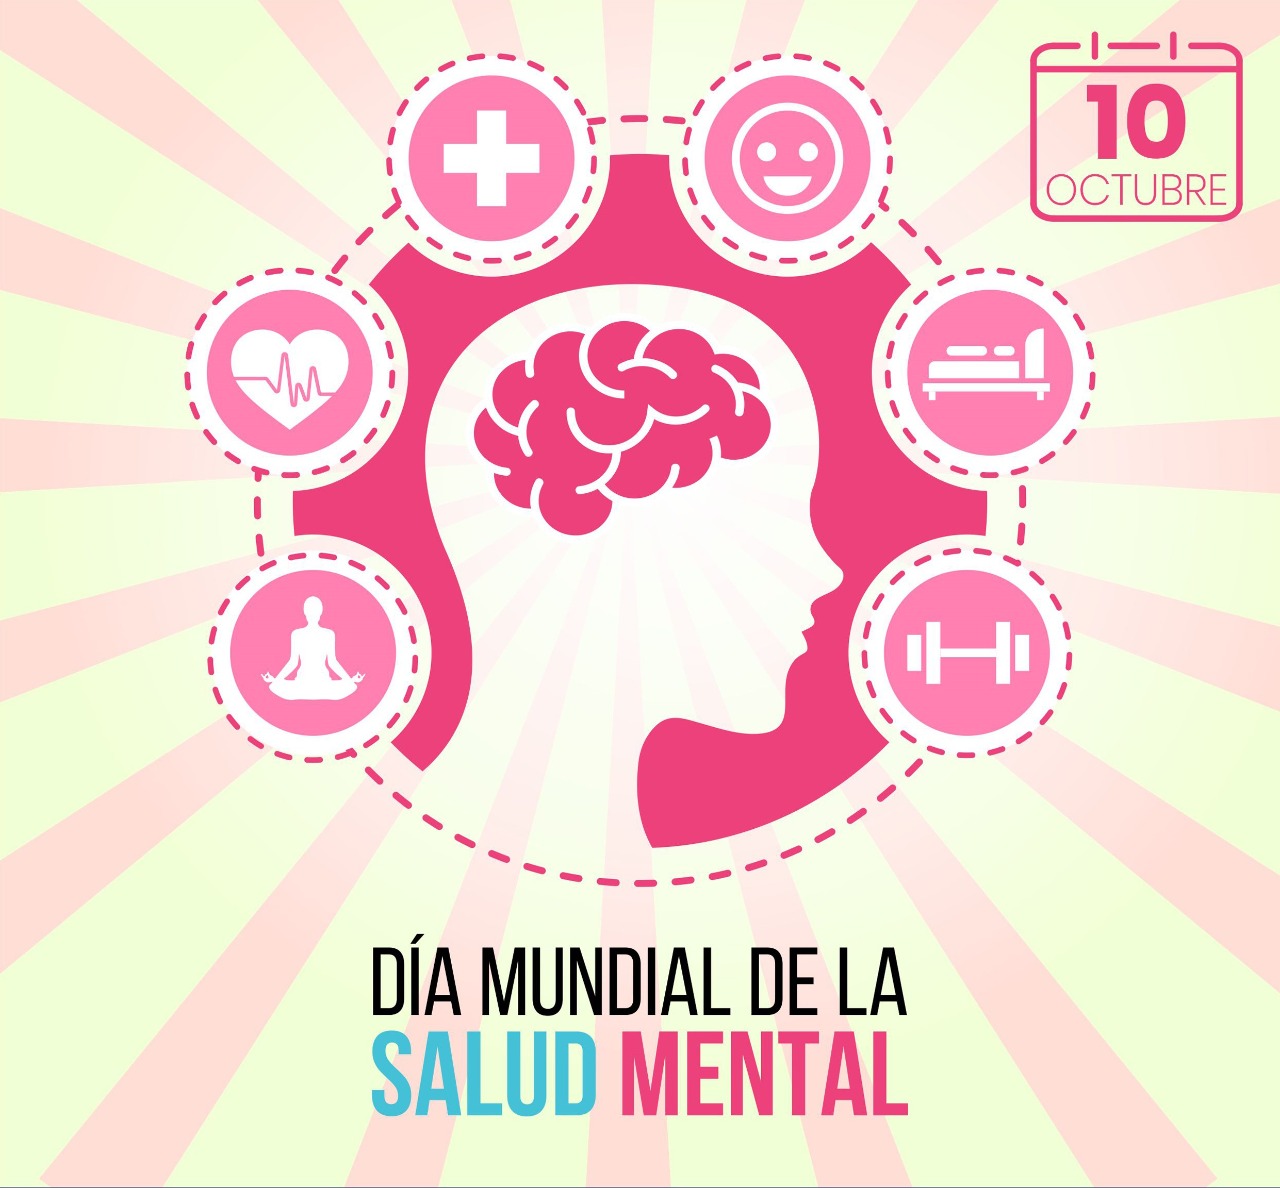 Read more about the article “Que la salud mental de todos sea una prioridad mundial”